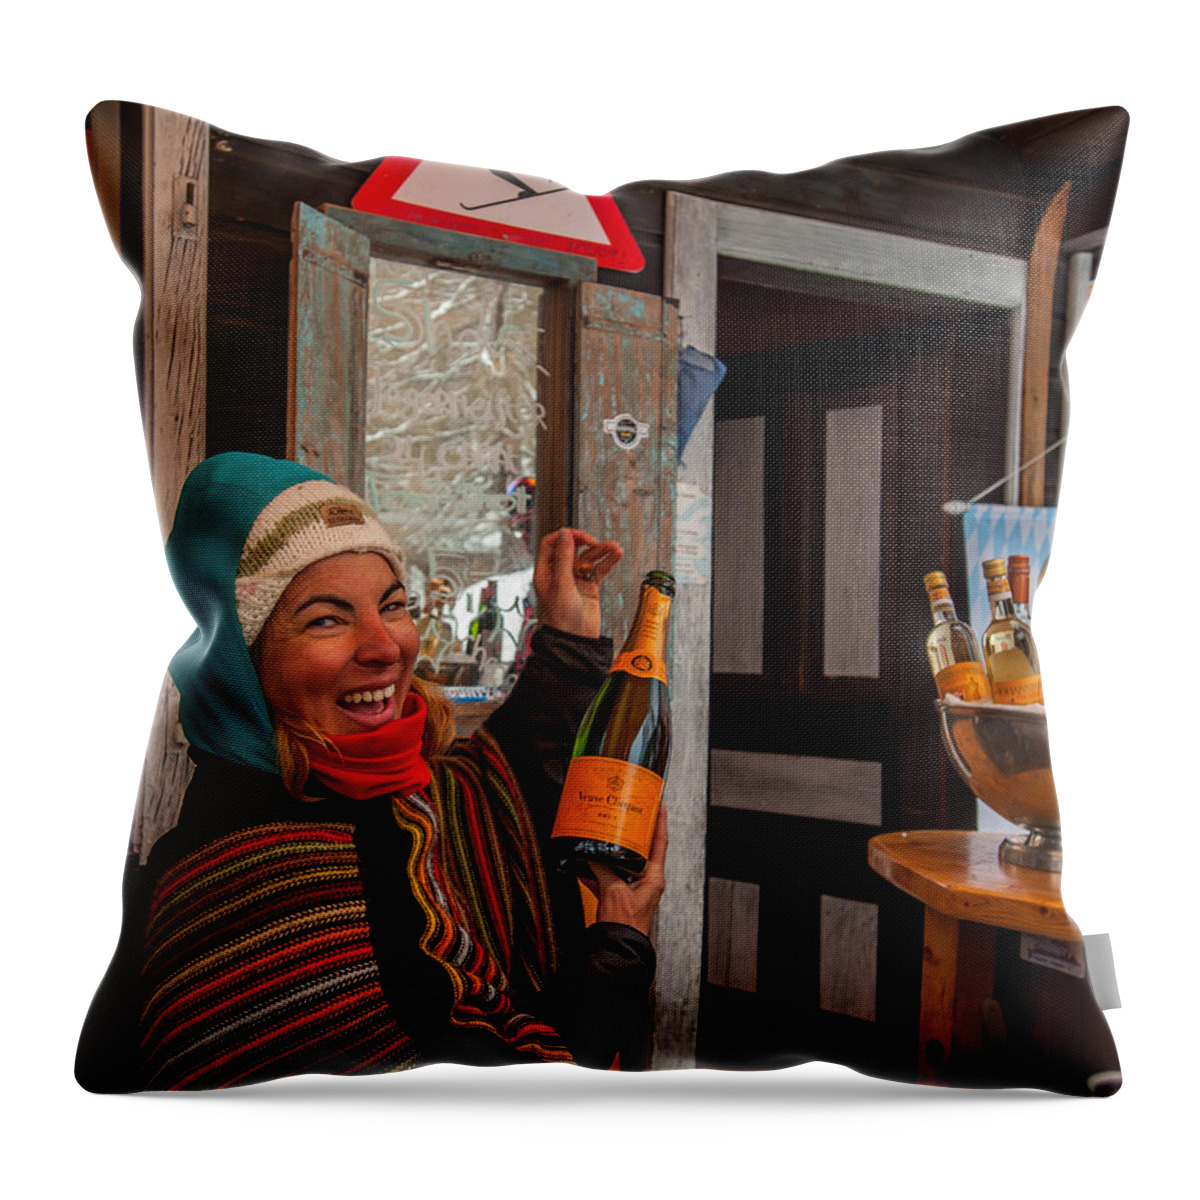 Matterhorn Throw Pillow featuring the photograph Taimi in Zermatt Switzerland by Brenda Jacobs